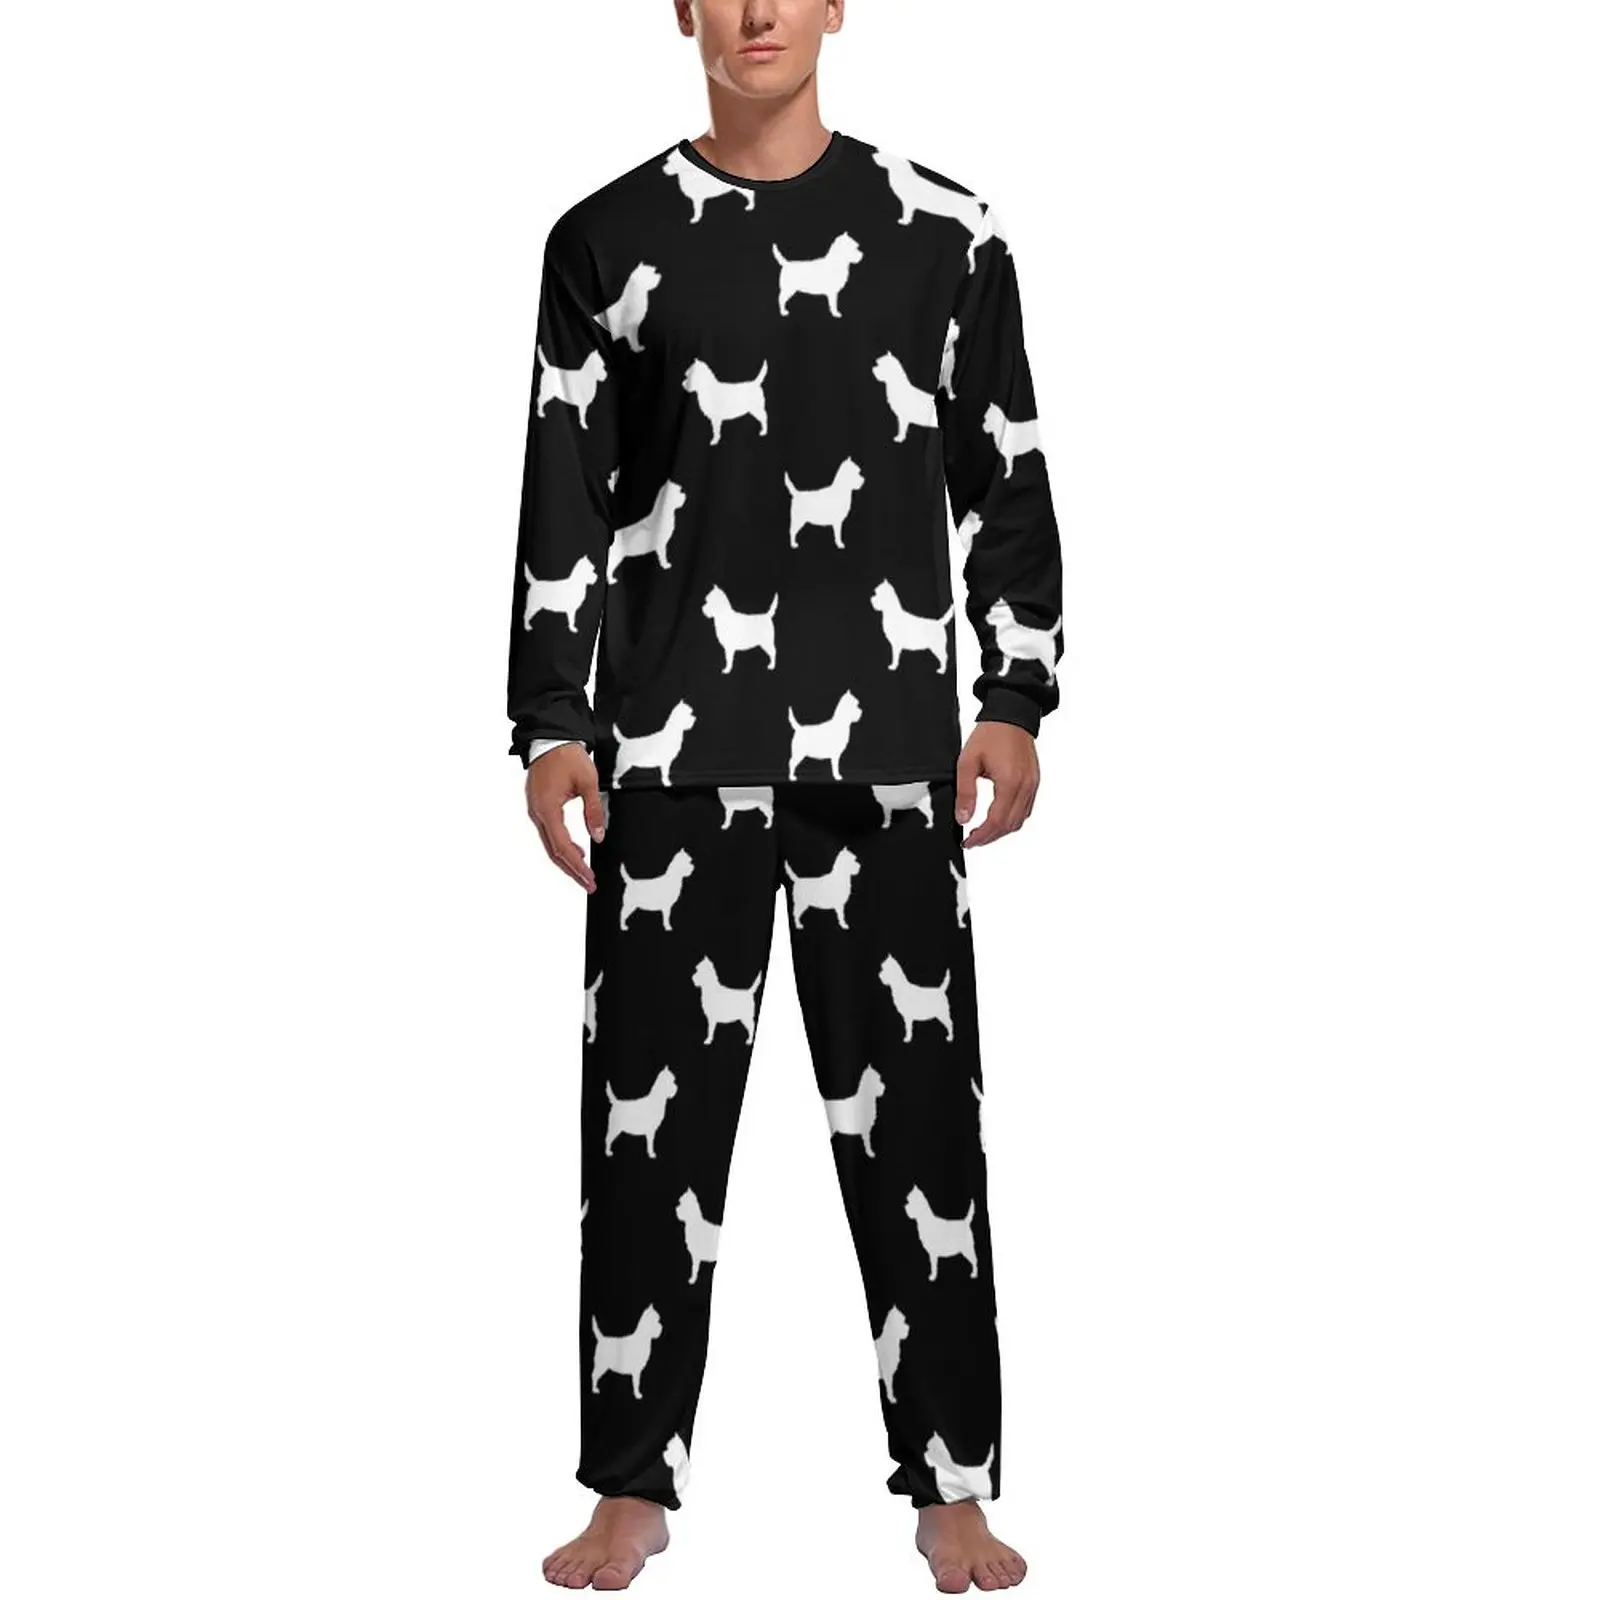 Animal Silhouette Pajamas Man Dogs Print Soft Sleepwear Autumn Long Sleeve 2 Pieces Room Graphic Pajama Sets